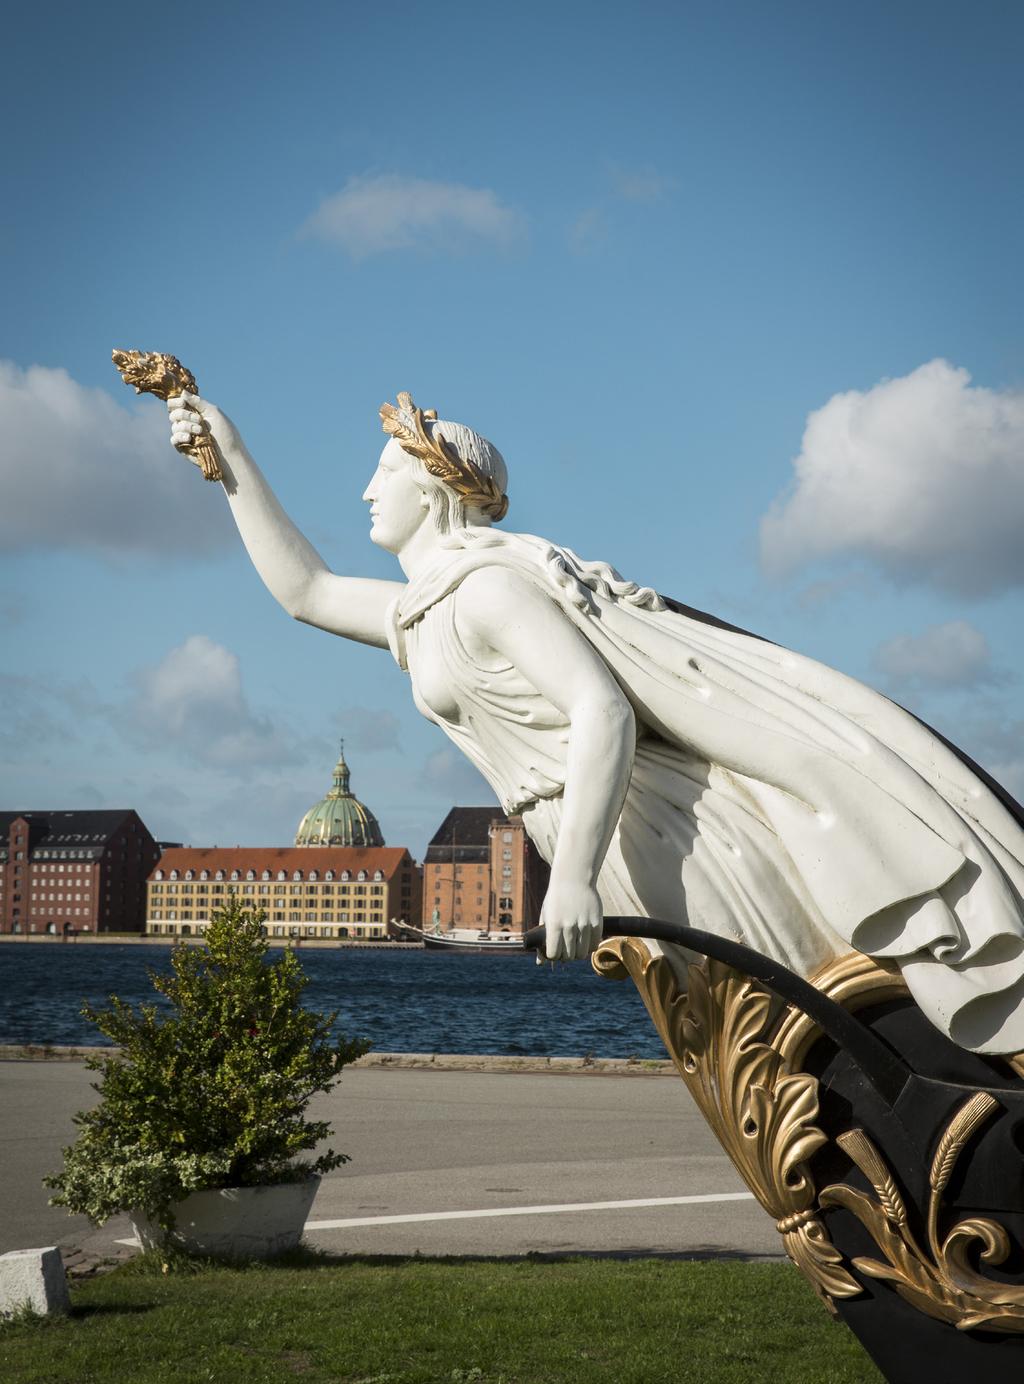 Sammen med Kastellet på den anden side af havnen rummer Nyholm en unik fortælling om Danmark. En fortælling, der går tilbage til 1600-tallet, og som har haft afgørende betydning for vores nation.